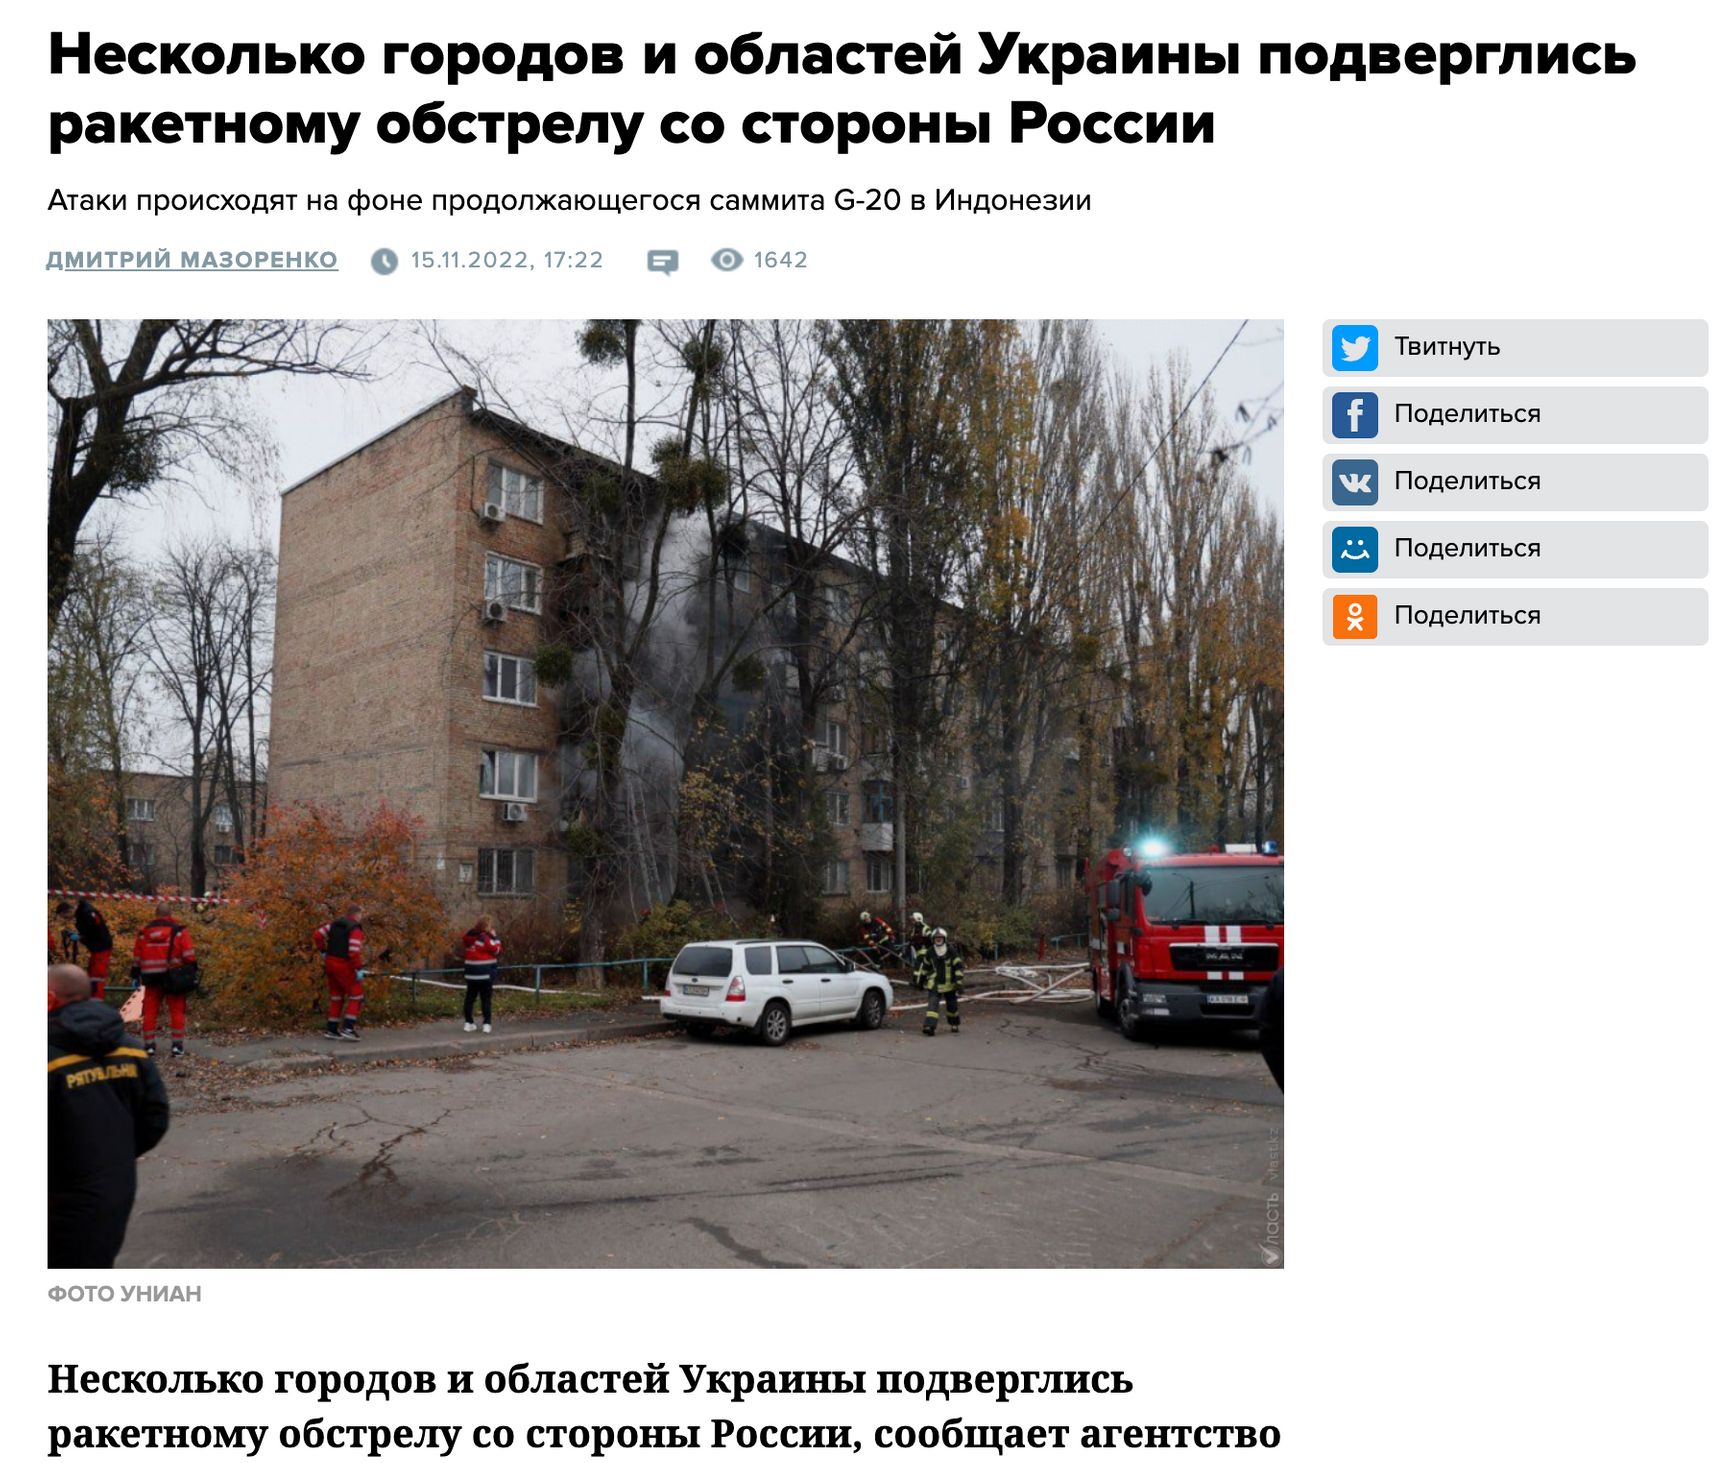 Казахстанское издание «Власть» отказалось удалять новости о войне в Украине по требованию Роскомнадзора